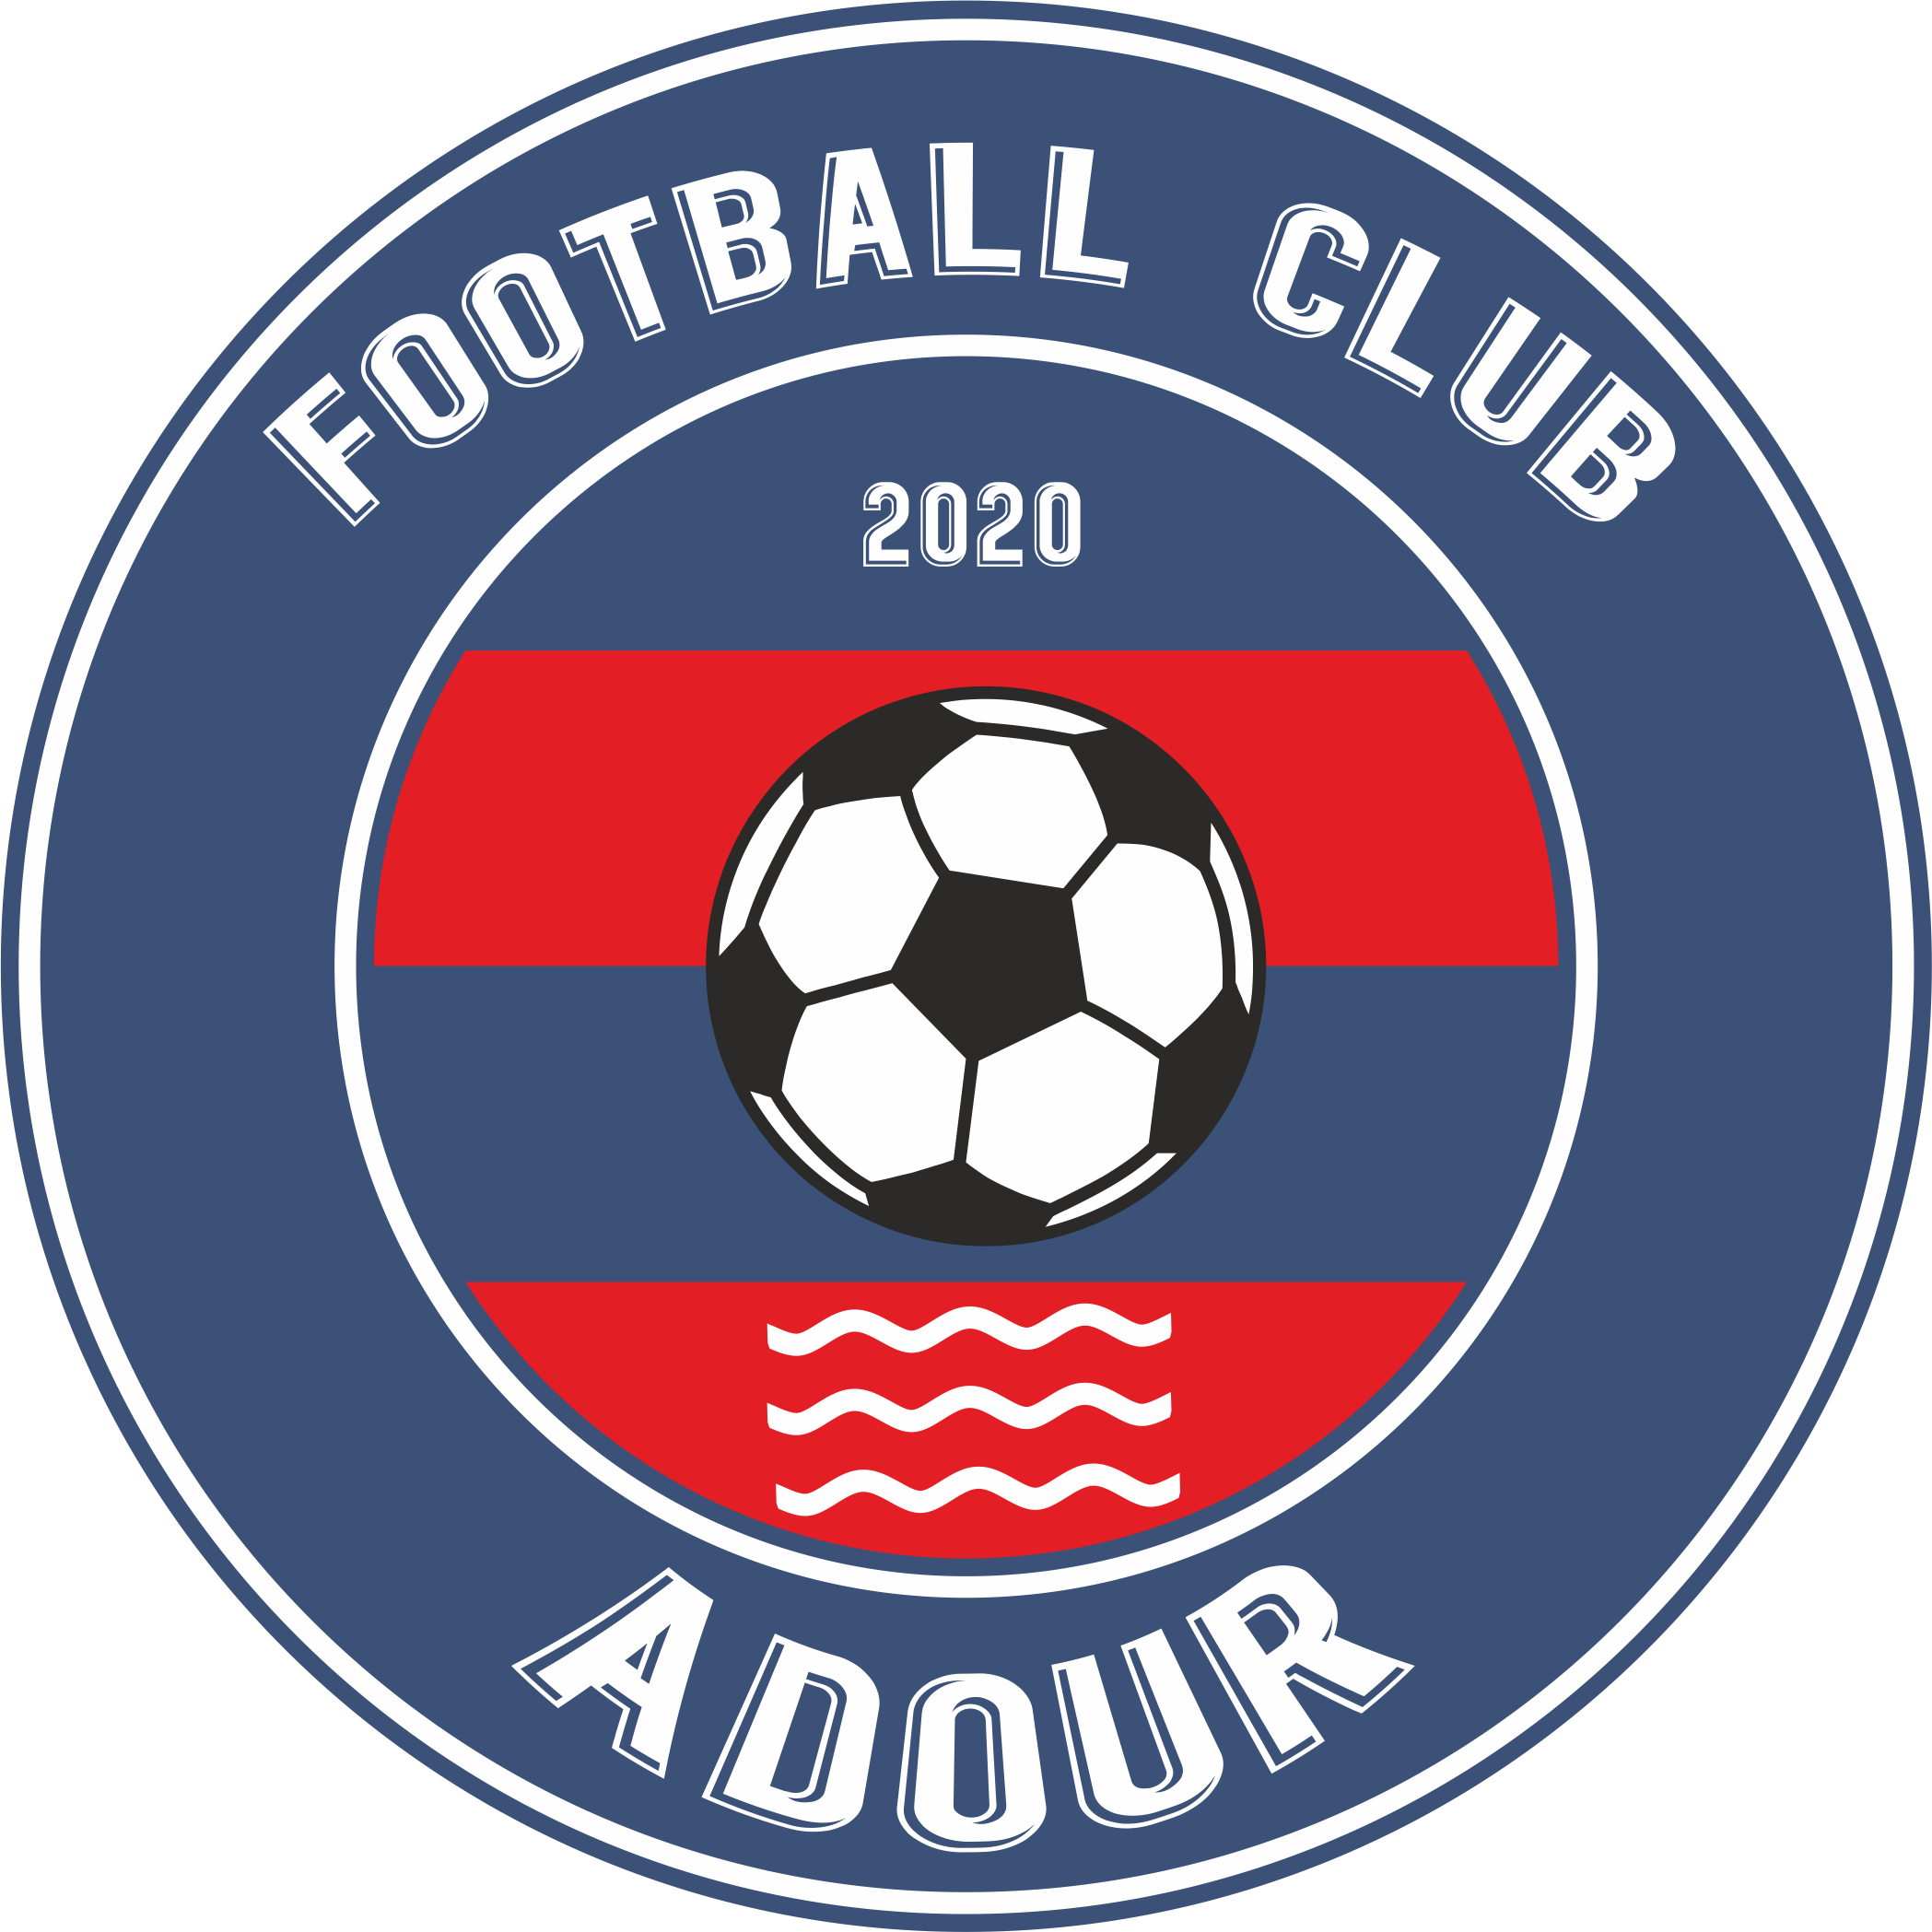 FOOTBALL CLUB ADOUR Logo